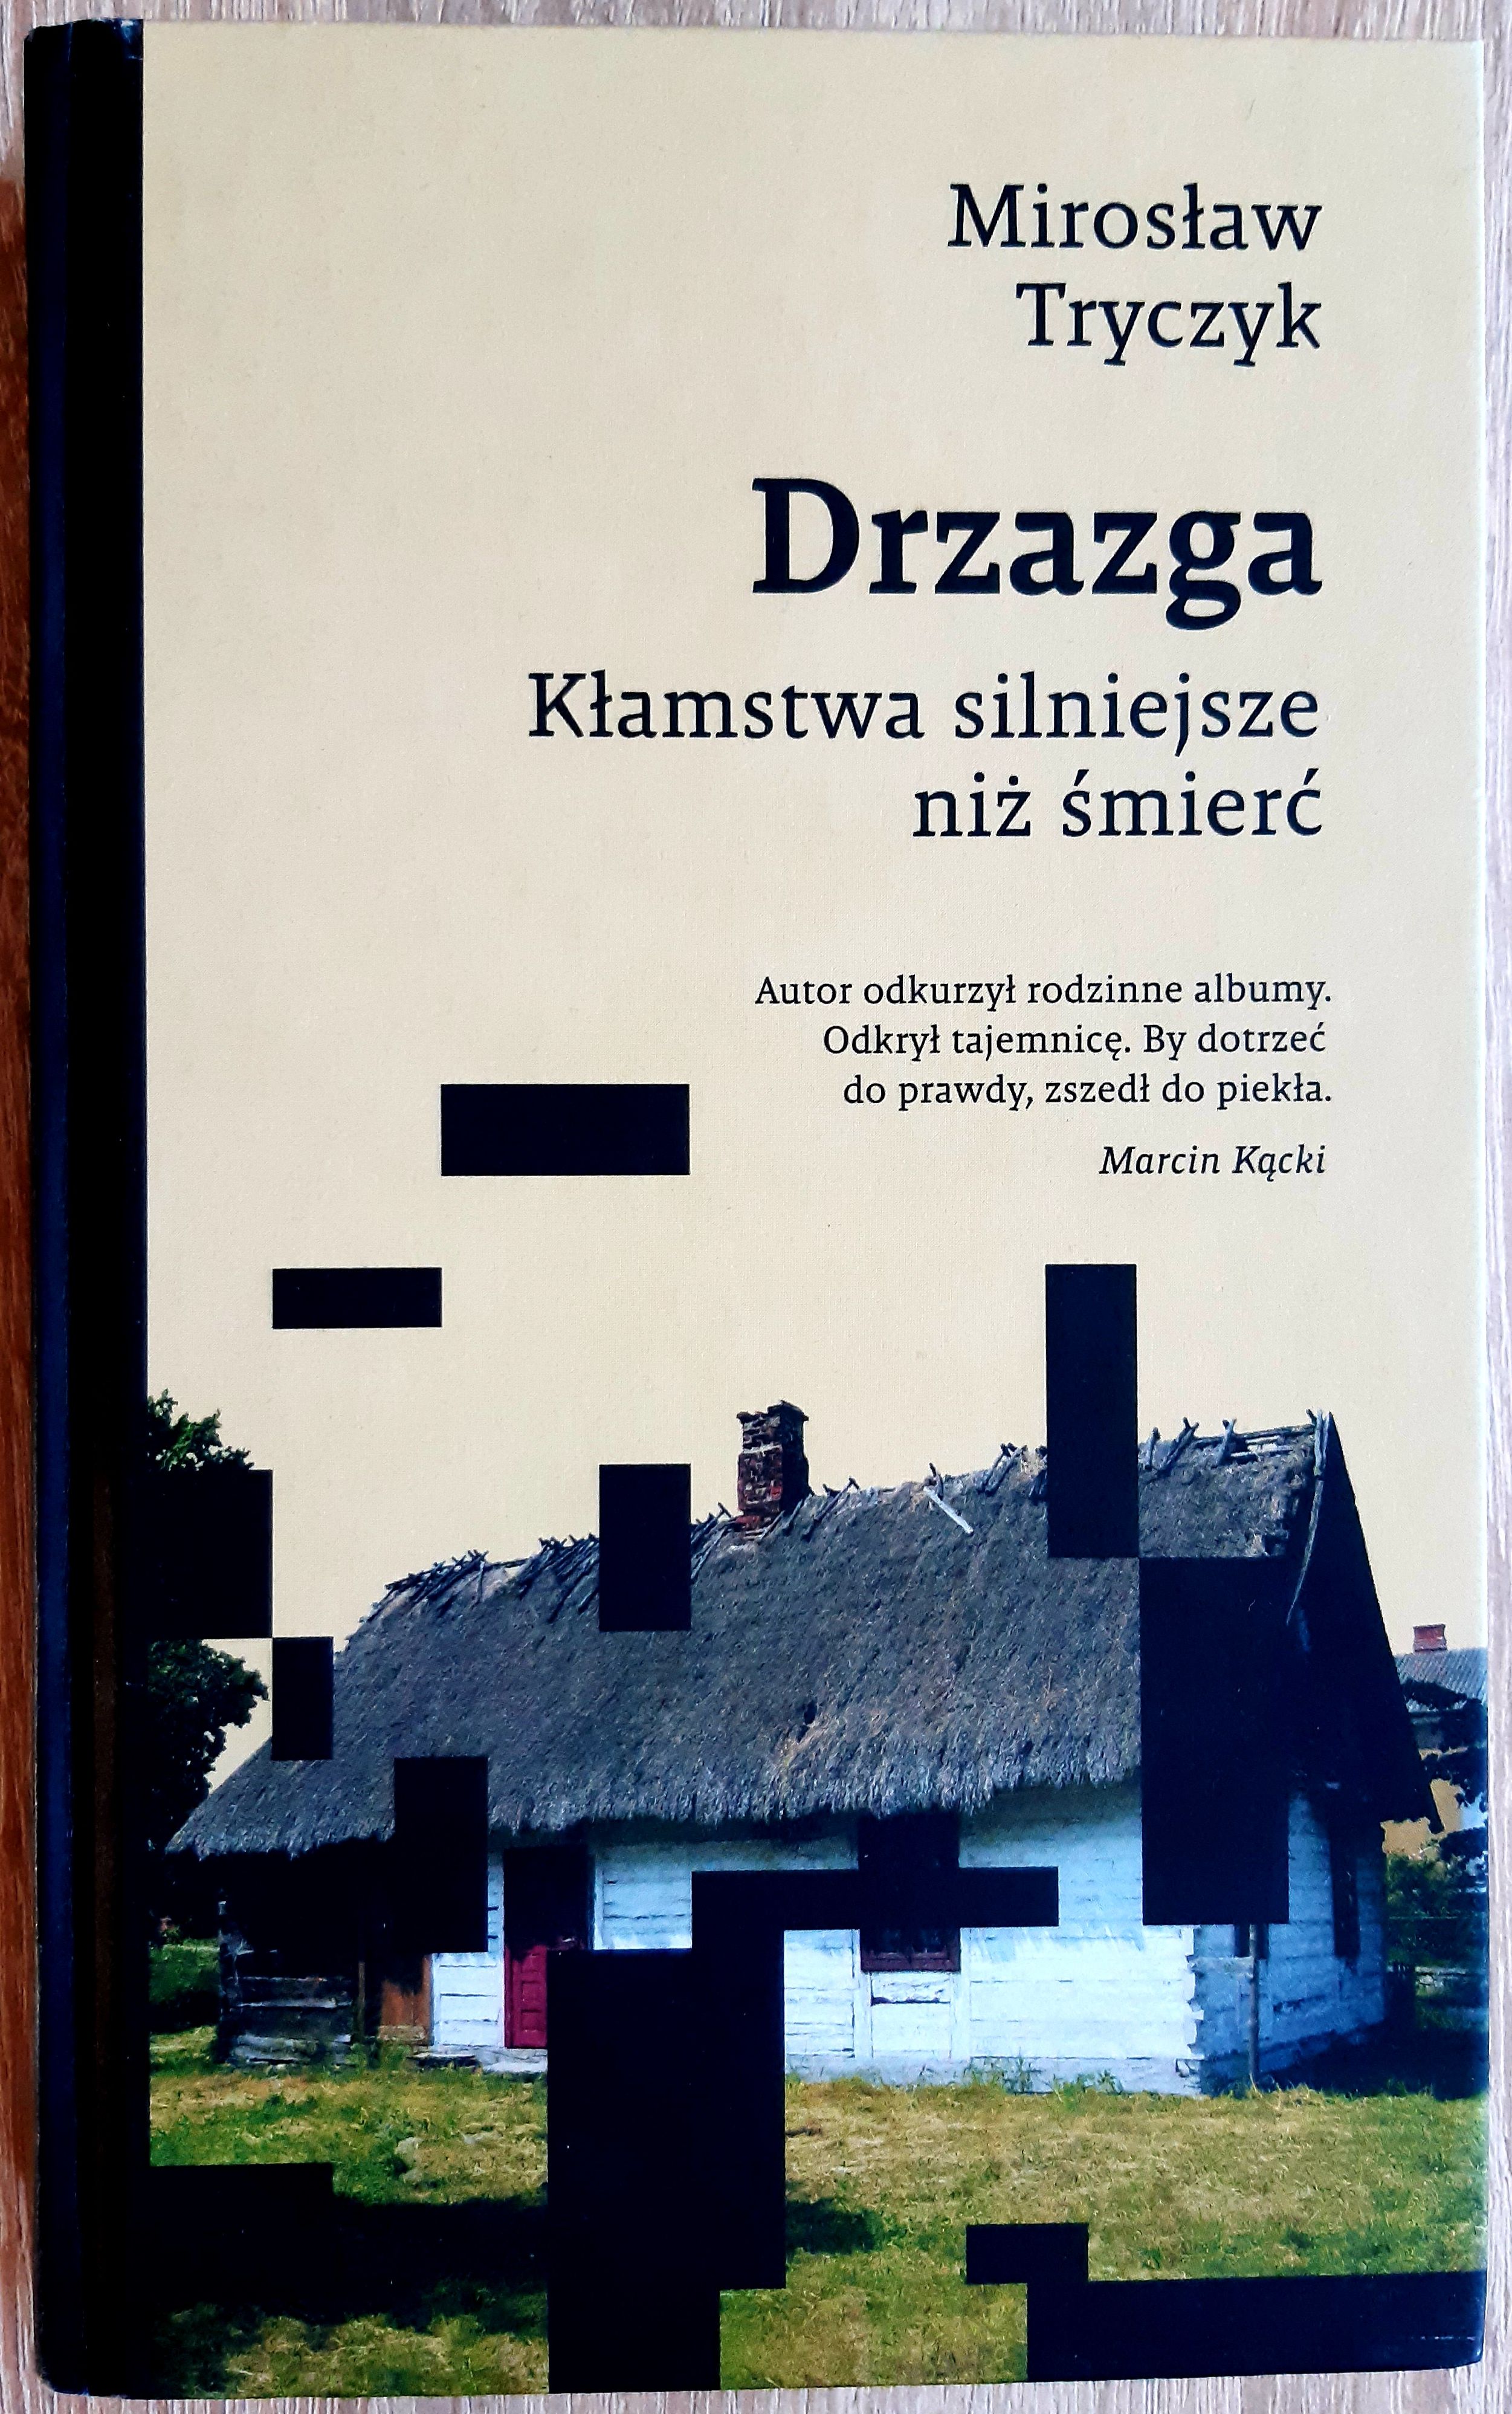 Mirosław Tryczyk: Drzazga. Kłamstwa silniejsze niż śmierć, Znak, Kraków 2020, [351] s.